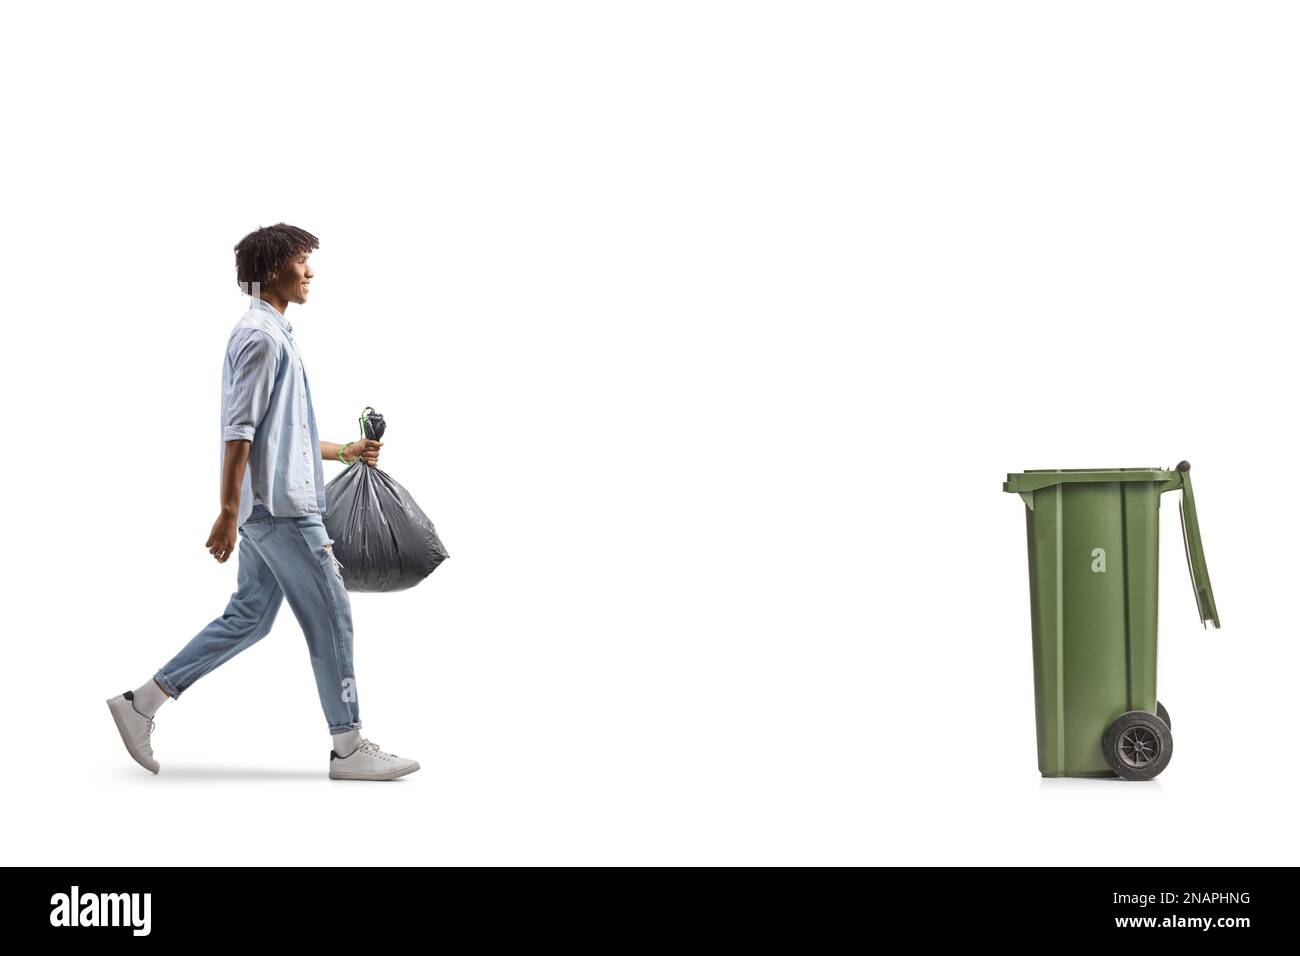 Profilaufnahme eines afroamerikanischen Mannes, der auf einen Müll zugeht und einen Plastikbeutel mit sich führt, isoliert auf weißem Hintergrund Stockfoto